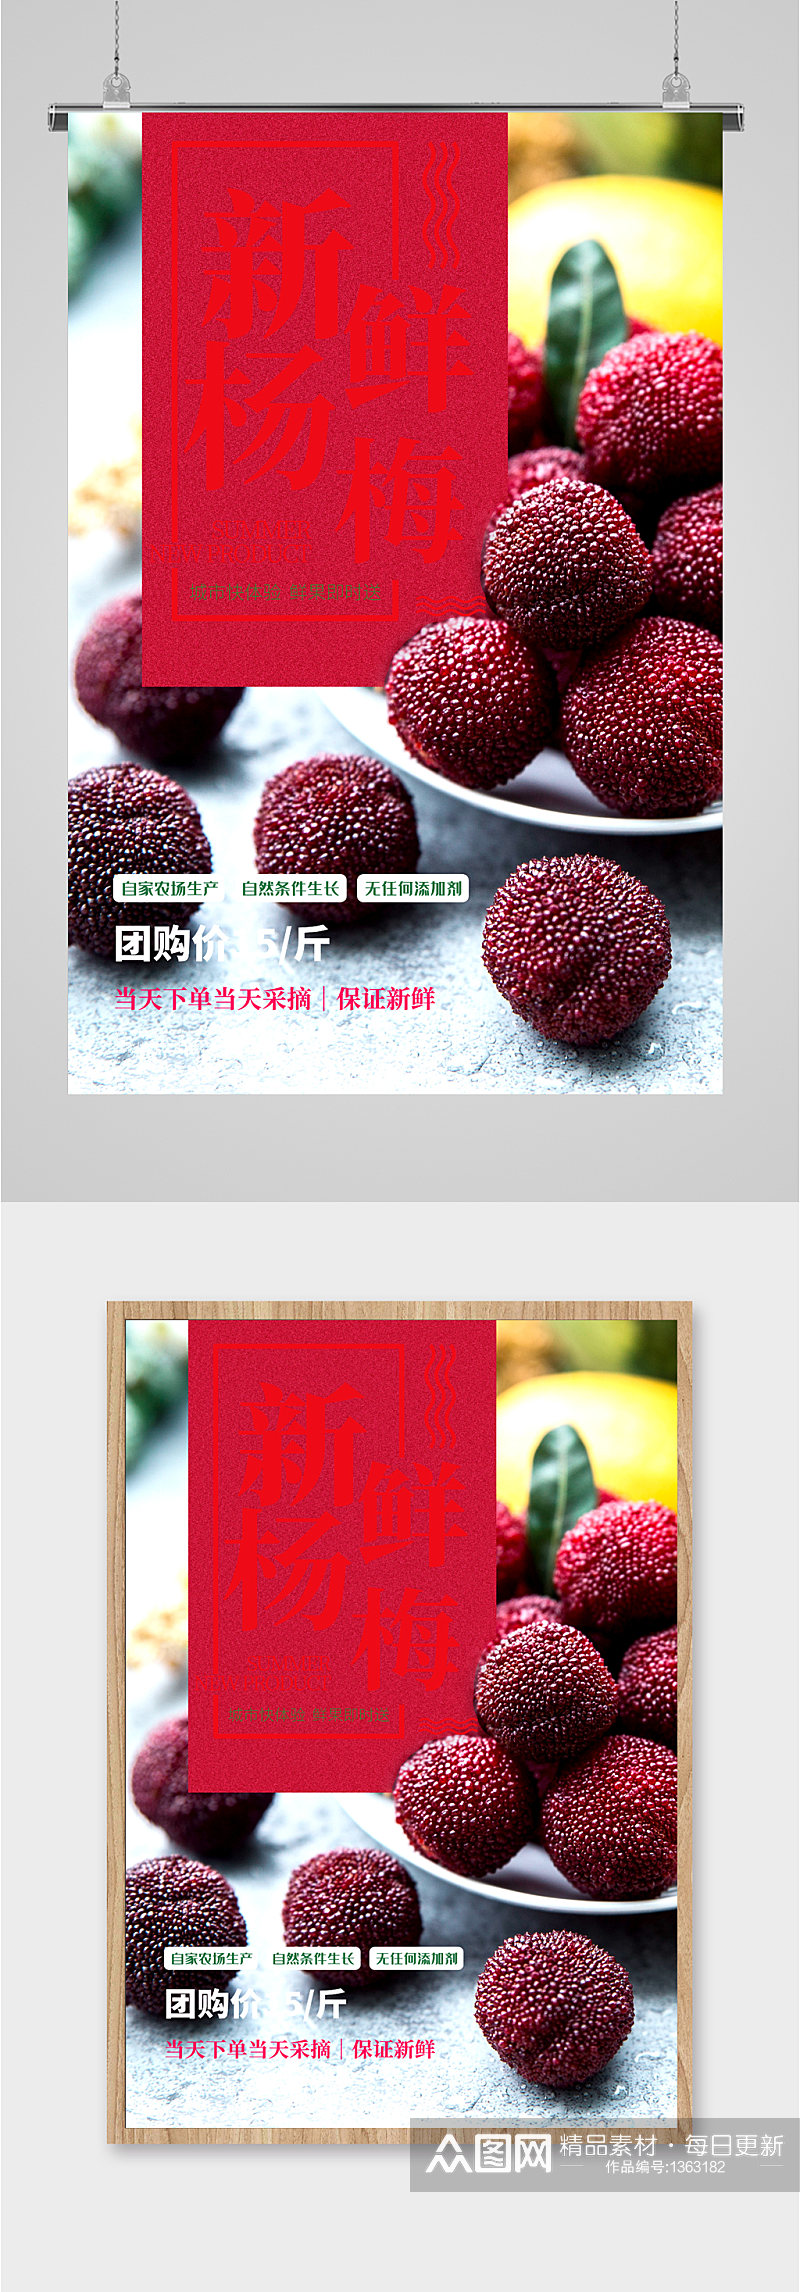 新鲜杨梅水果促销海报素材